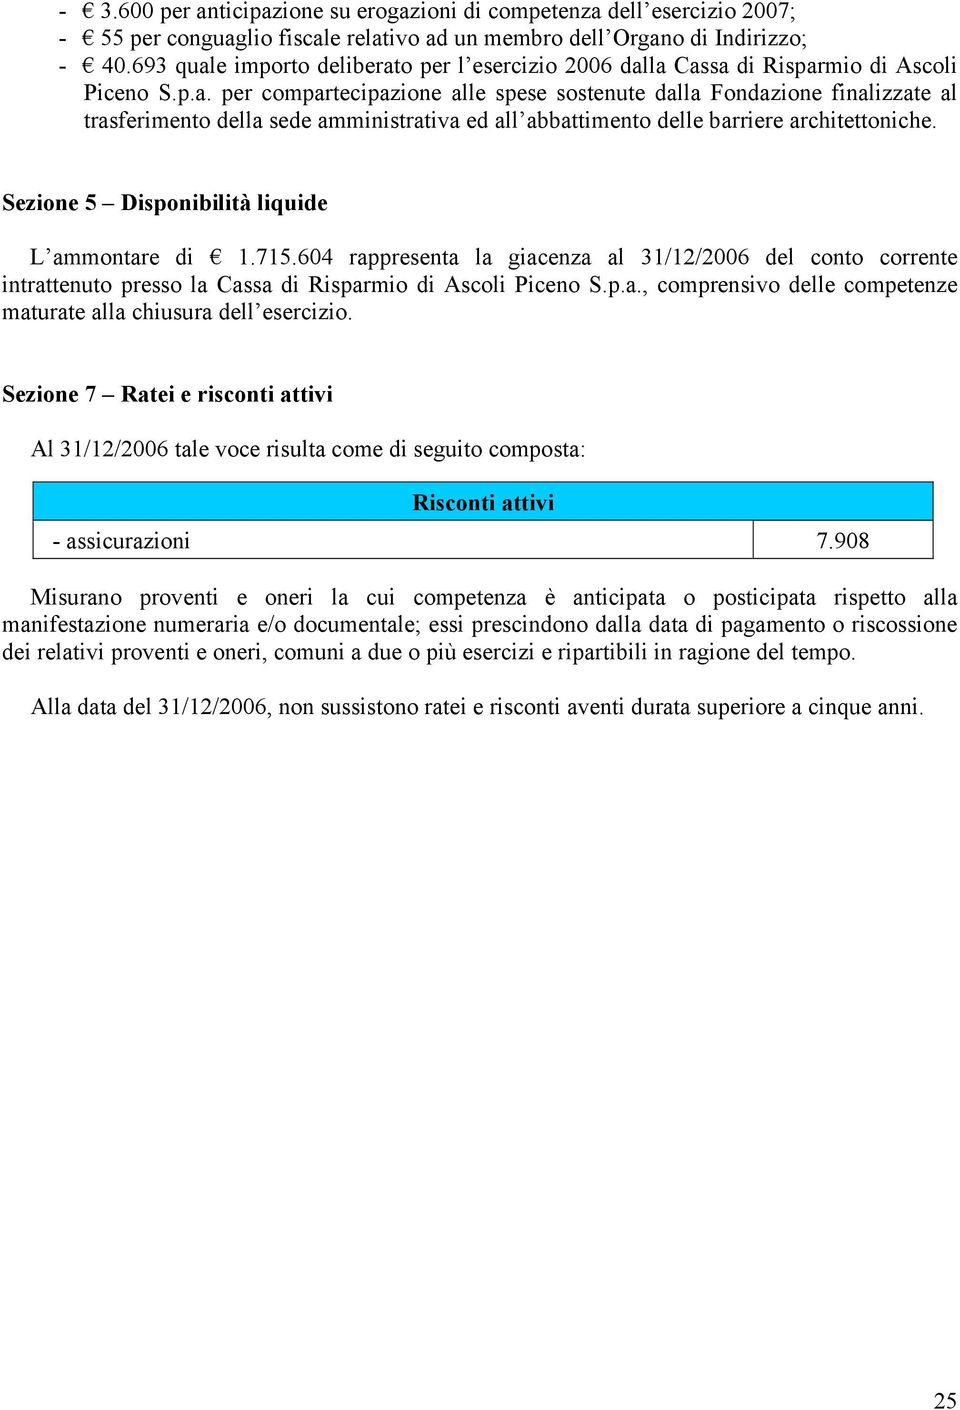 Sezione 5 Disponibilità liquide L ammontare di 1.715.604 rappresenta la giacenza al 31/12/2006 del conto corrente intrattenuto presso la Cassa di Risparmio di Ascoli Piceno S.p.a., comprensivo delle competenze maturate alla chiusura dell esercizio.